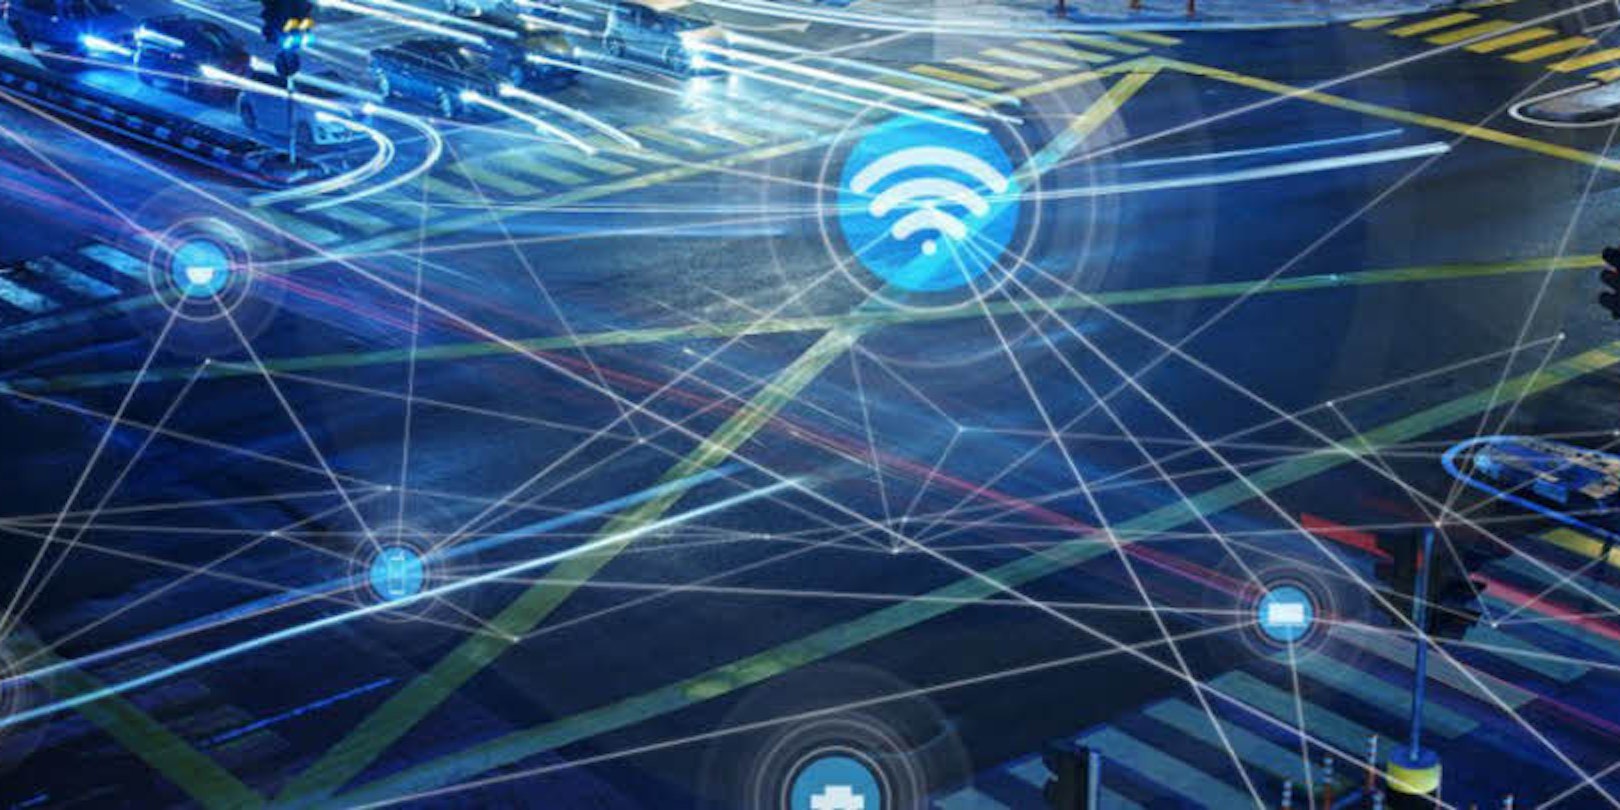 Netzwerkbetreiber arbeiten bereits an 5G, dem Mobilfunk der 5. Generation. Datenraten von 10 Gigabit pro Sekunde (Gbit/s) könnten damit erreicht werden.